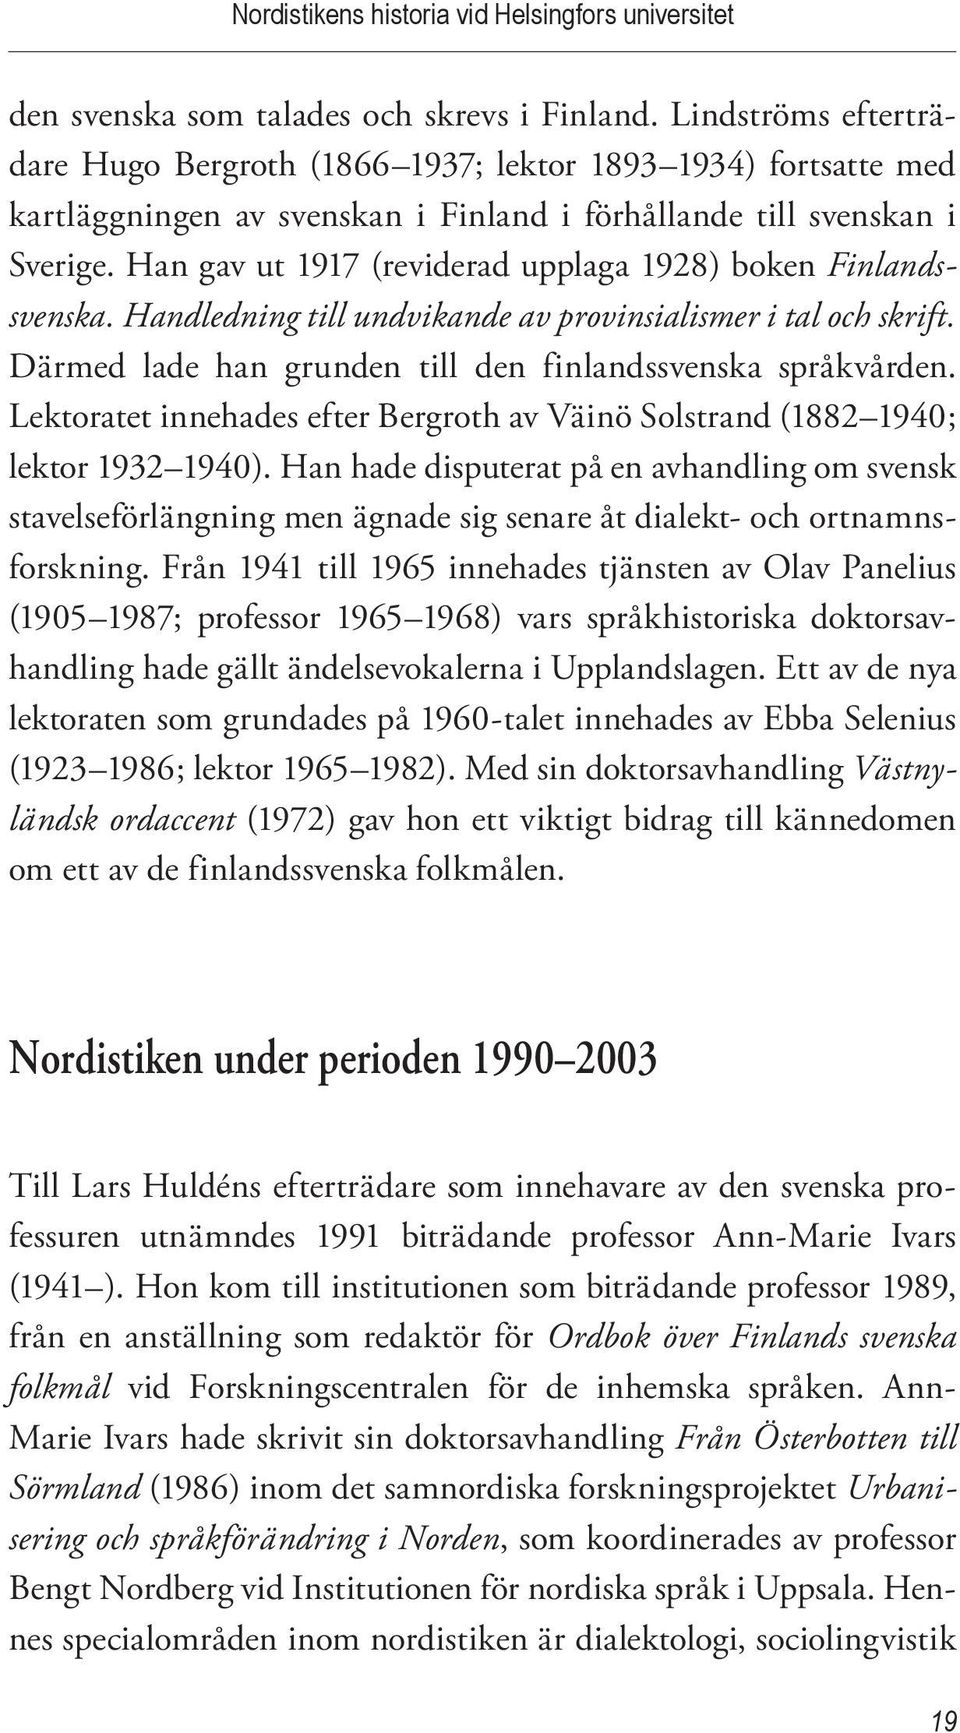 Han gav ut 1917 (reviderad upplaga 1928) boken Finlandssvenska. Handledning till undvikande av provinsialismer i tal och skrift. Därmed lade han grunden till den finlandssvenska språkvården.